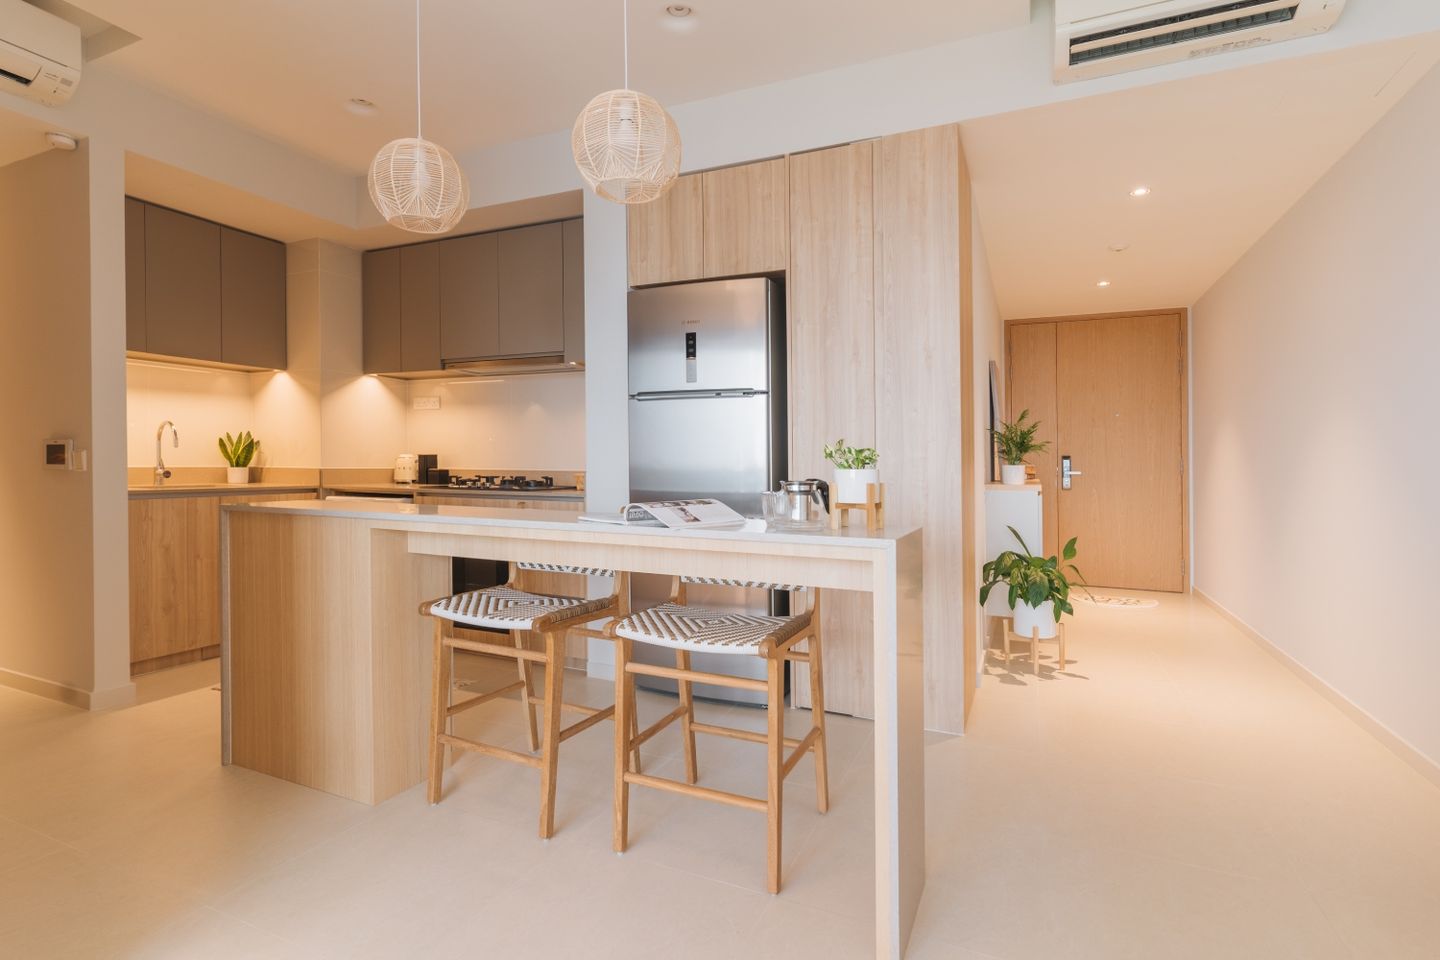 Island Kitchen With Scandinavian Interior Design - Livspace